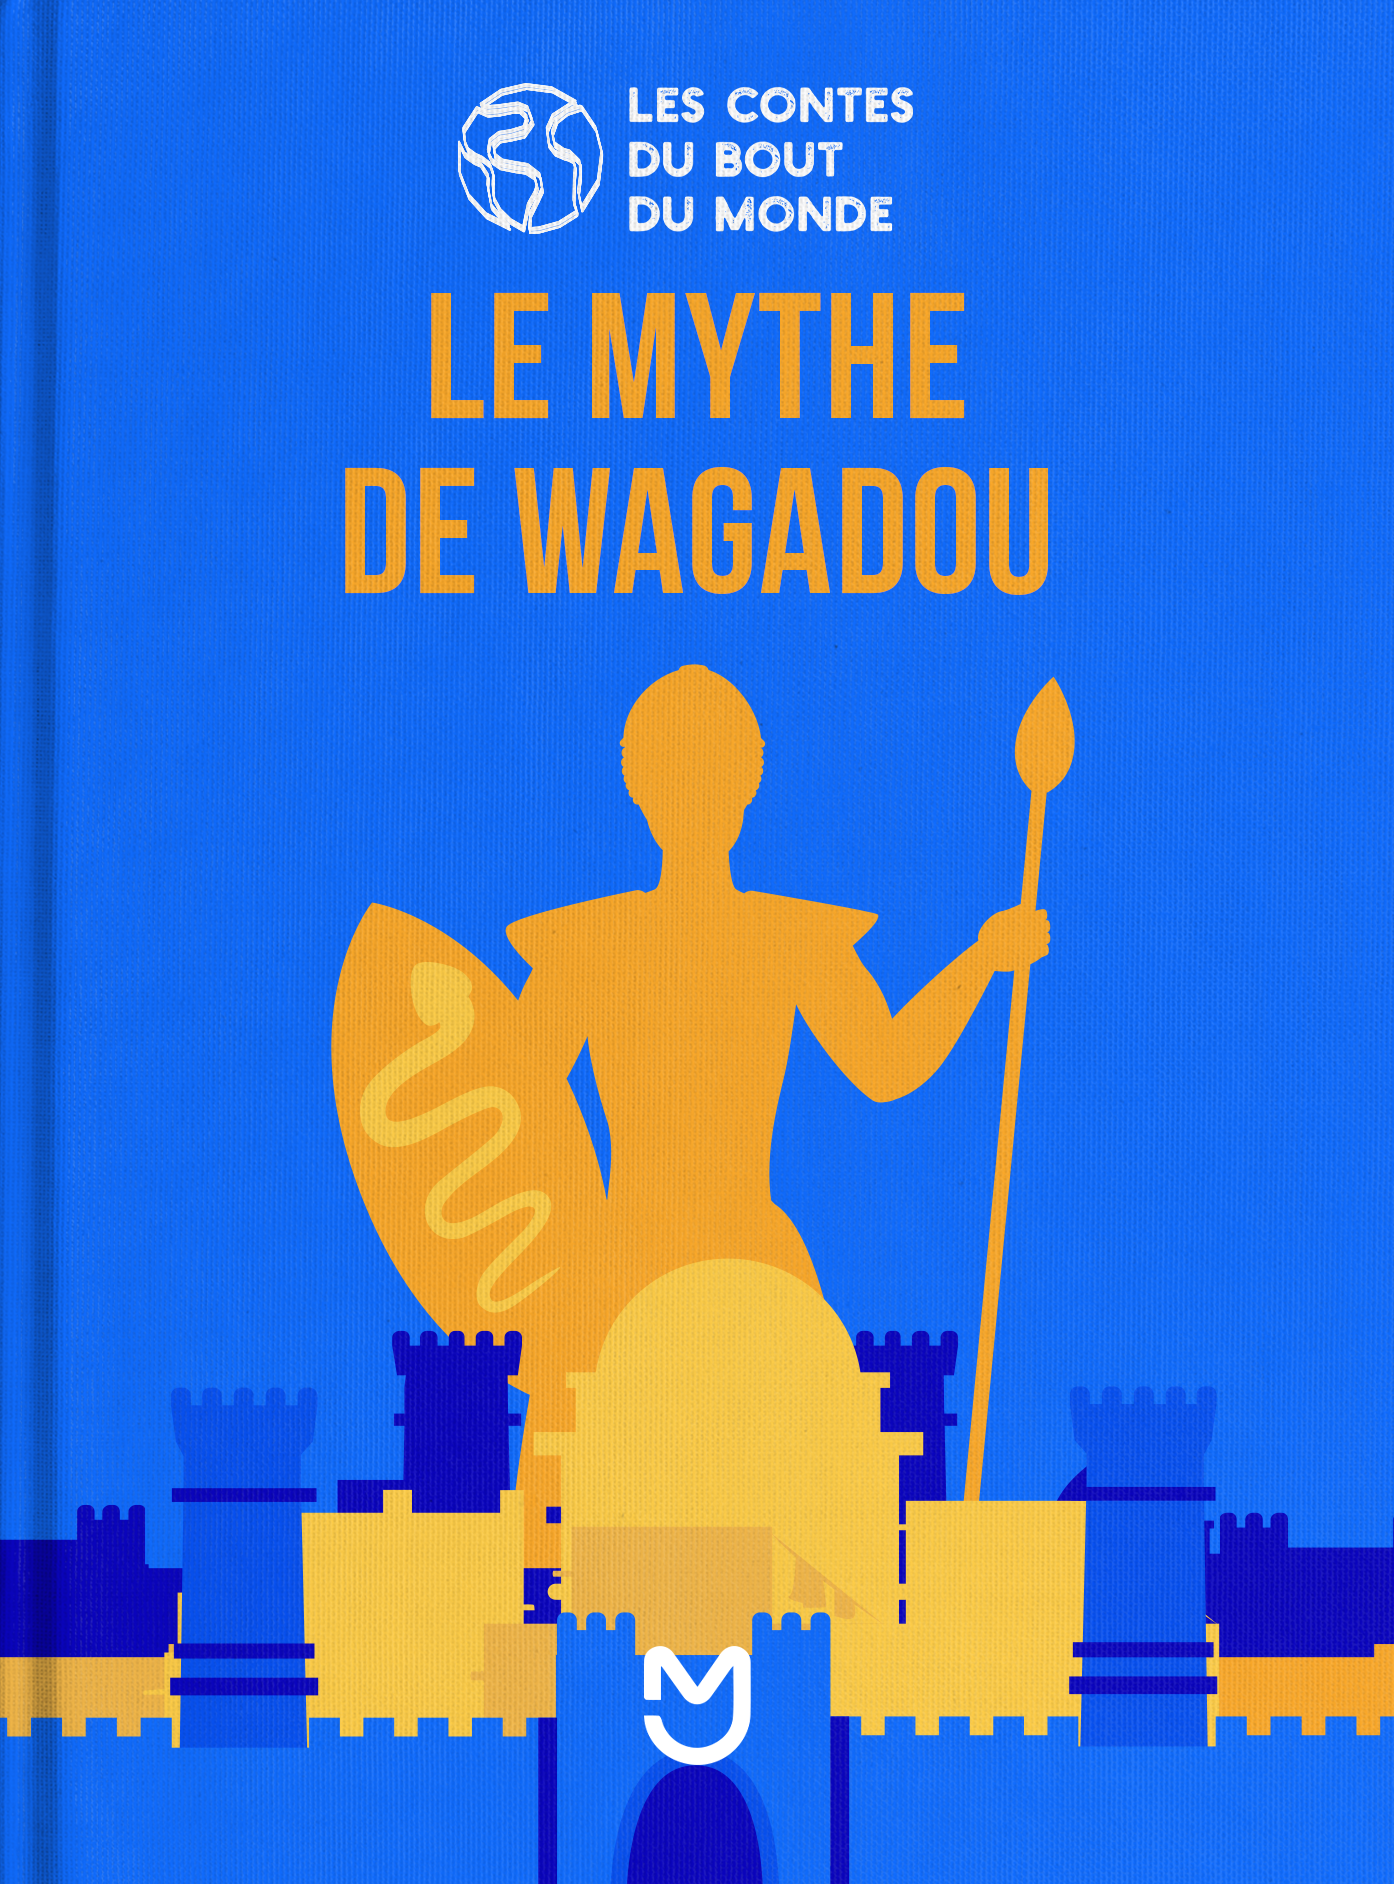 Le mythe de Wagadou